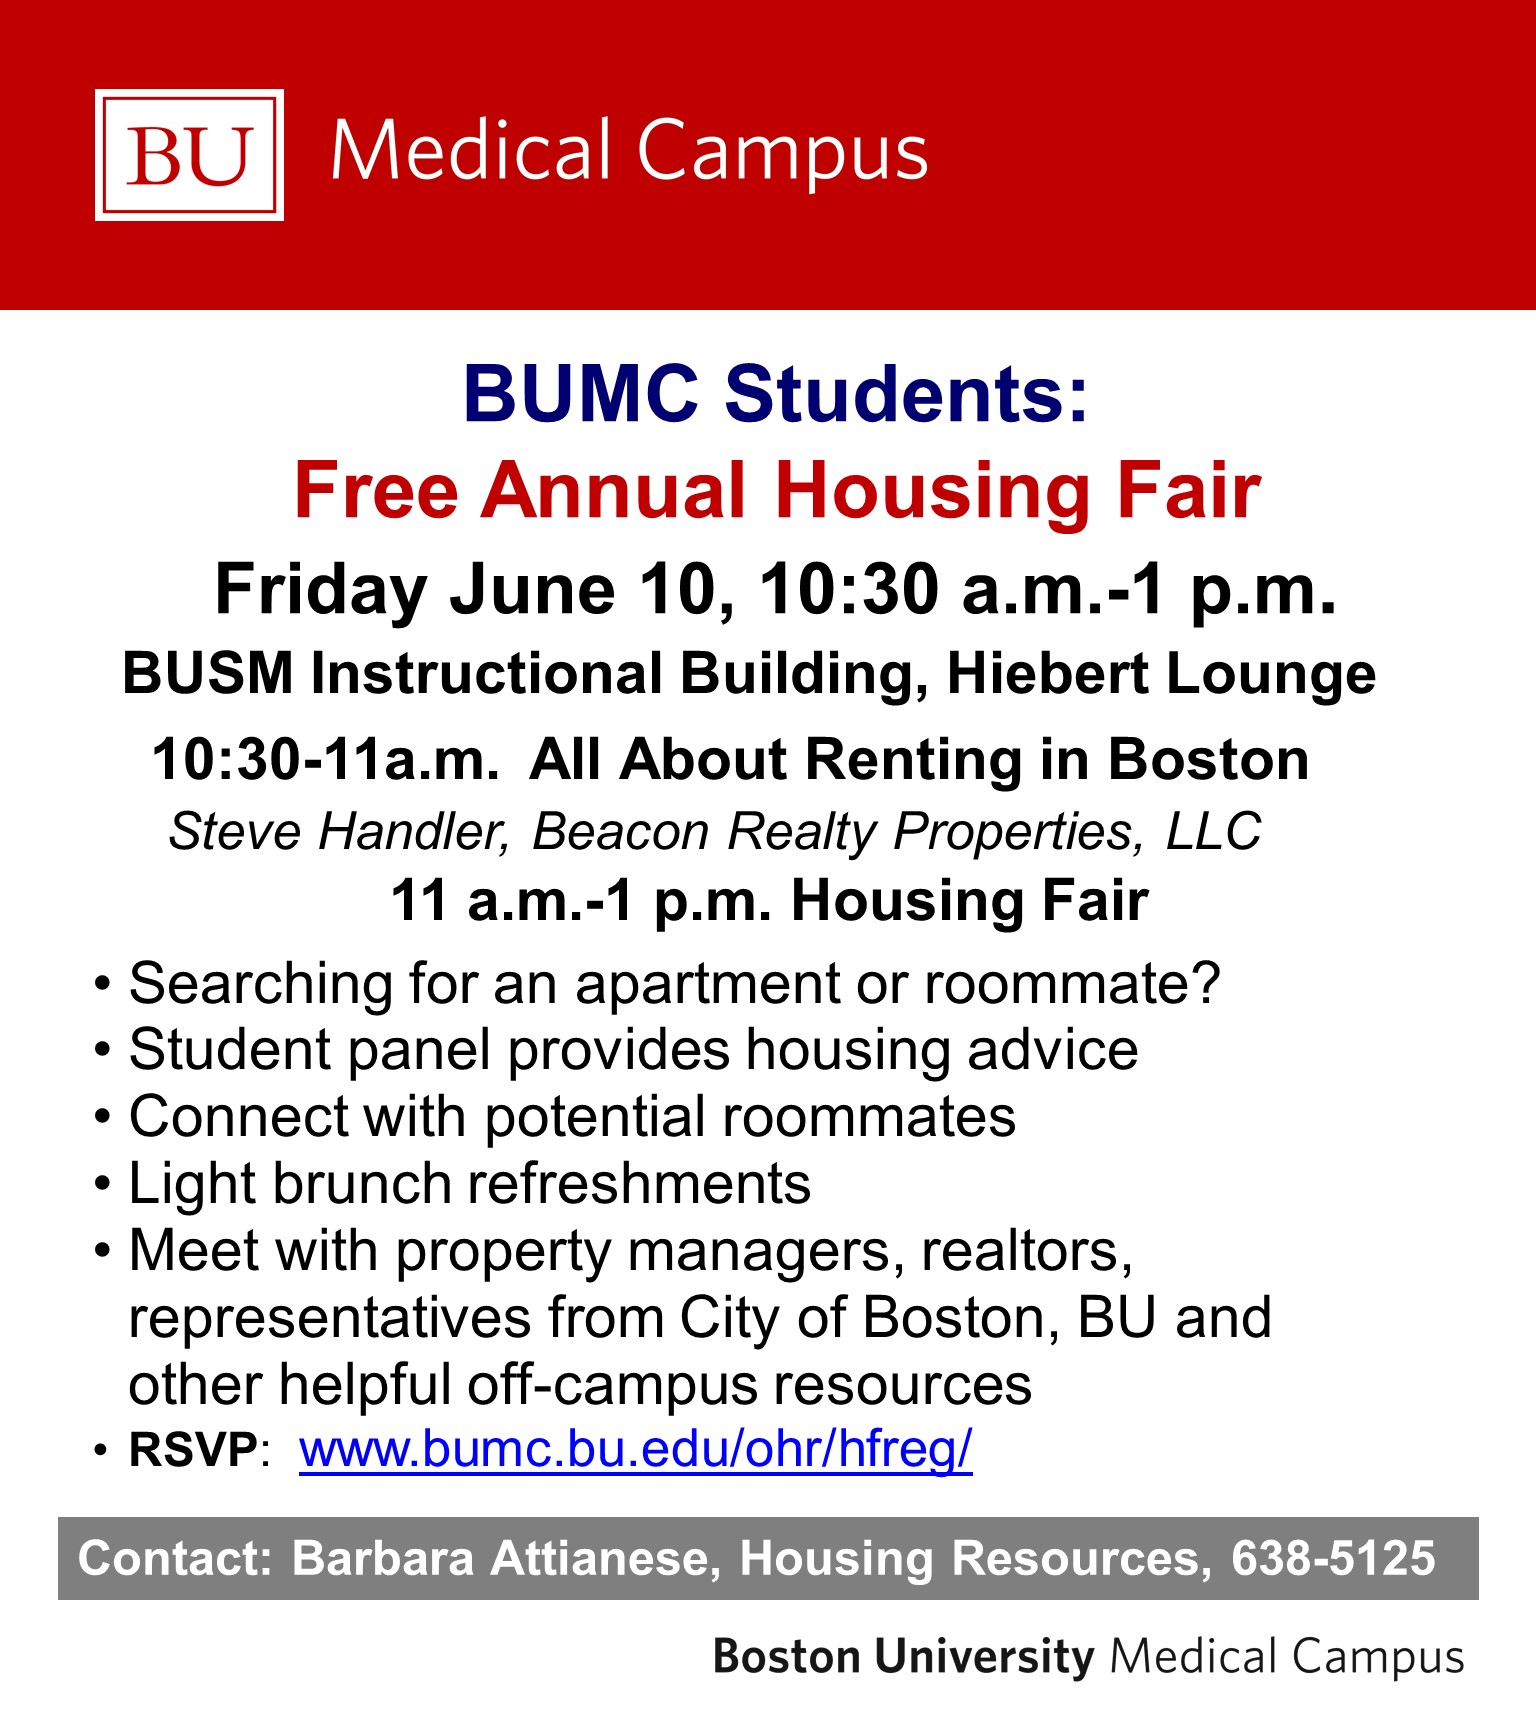 BUMC Housing Fair Student Announcment 2016